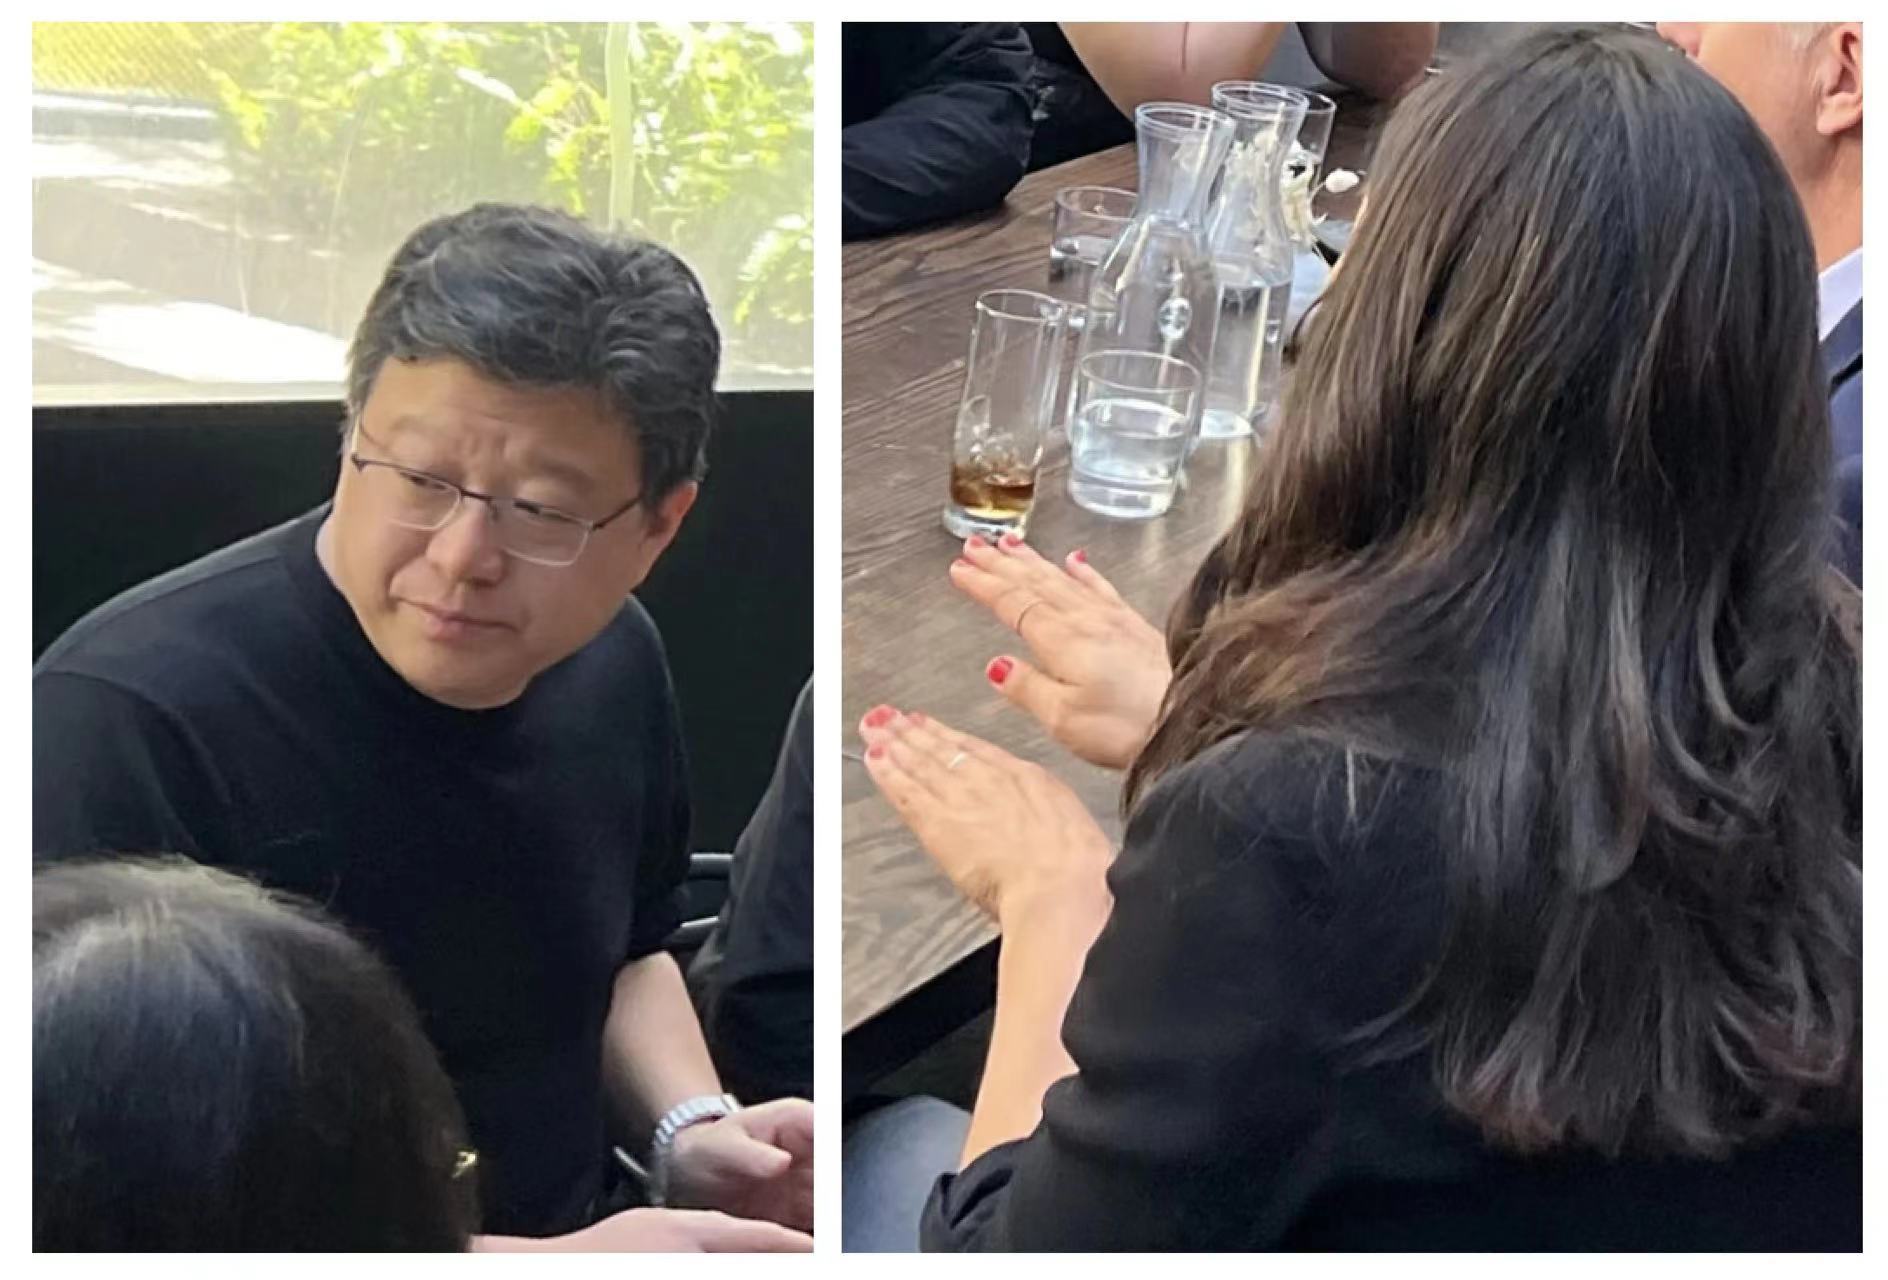 网传的双方会谈照片，左侧为网易CEO丁磊，右侧背对镜头女子为暴雪CEO乔安娜·法瑞斯 。图自差评君微信公众号